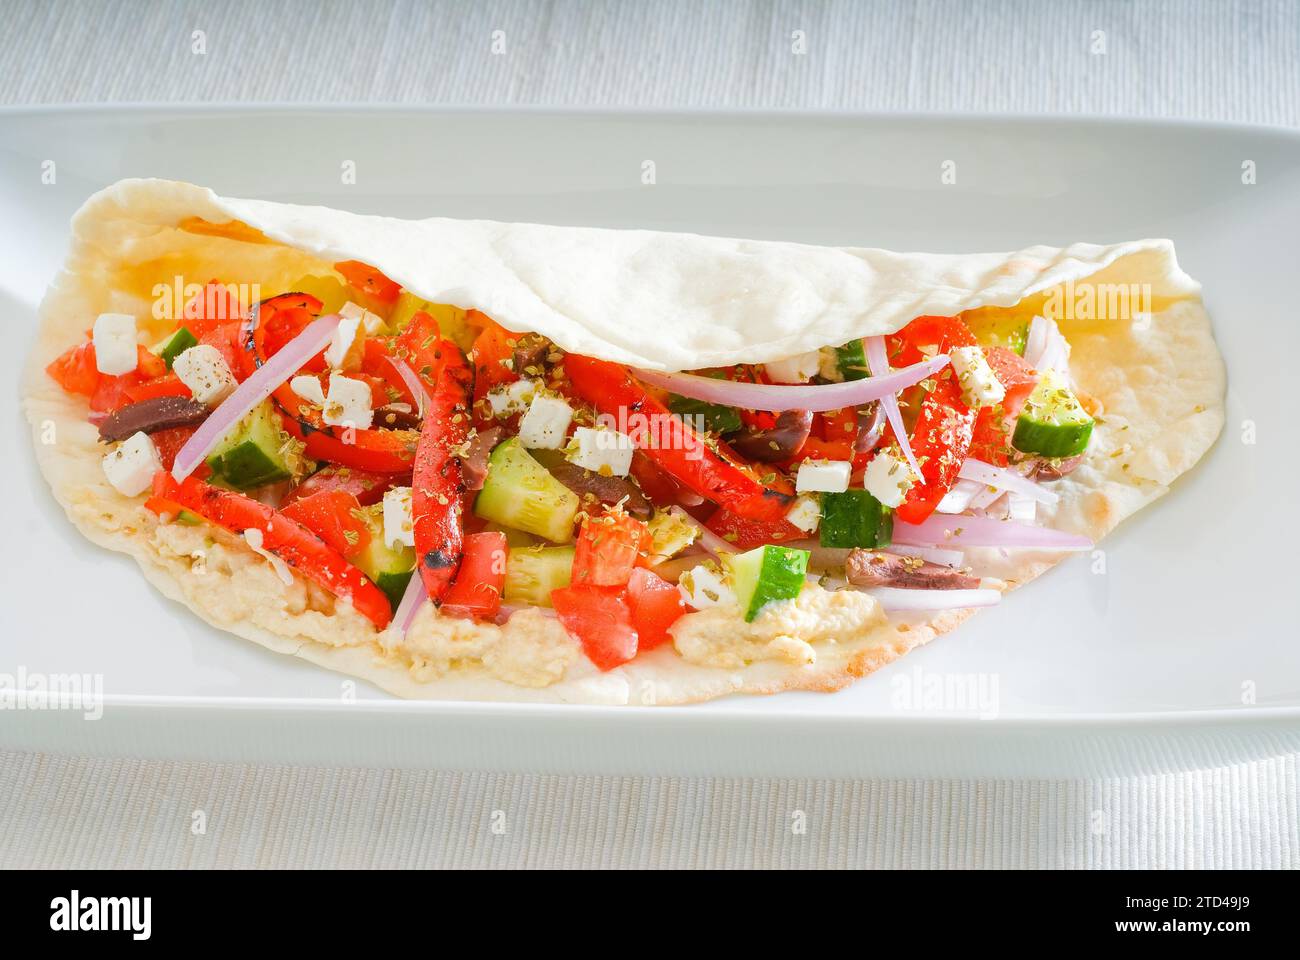 Impacco di insalata fresca fatta in casa su pane pita, cibo molto sano, Fotografia alimentare Foto Stock